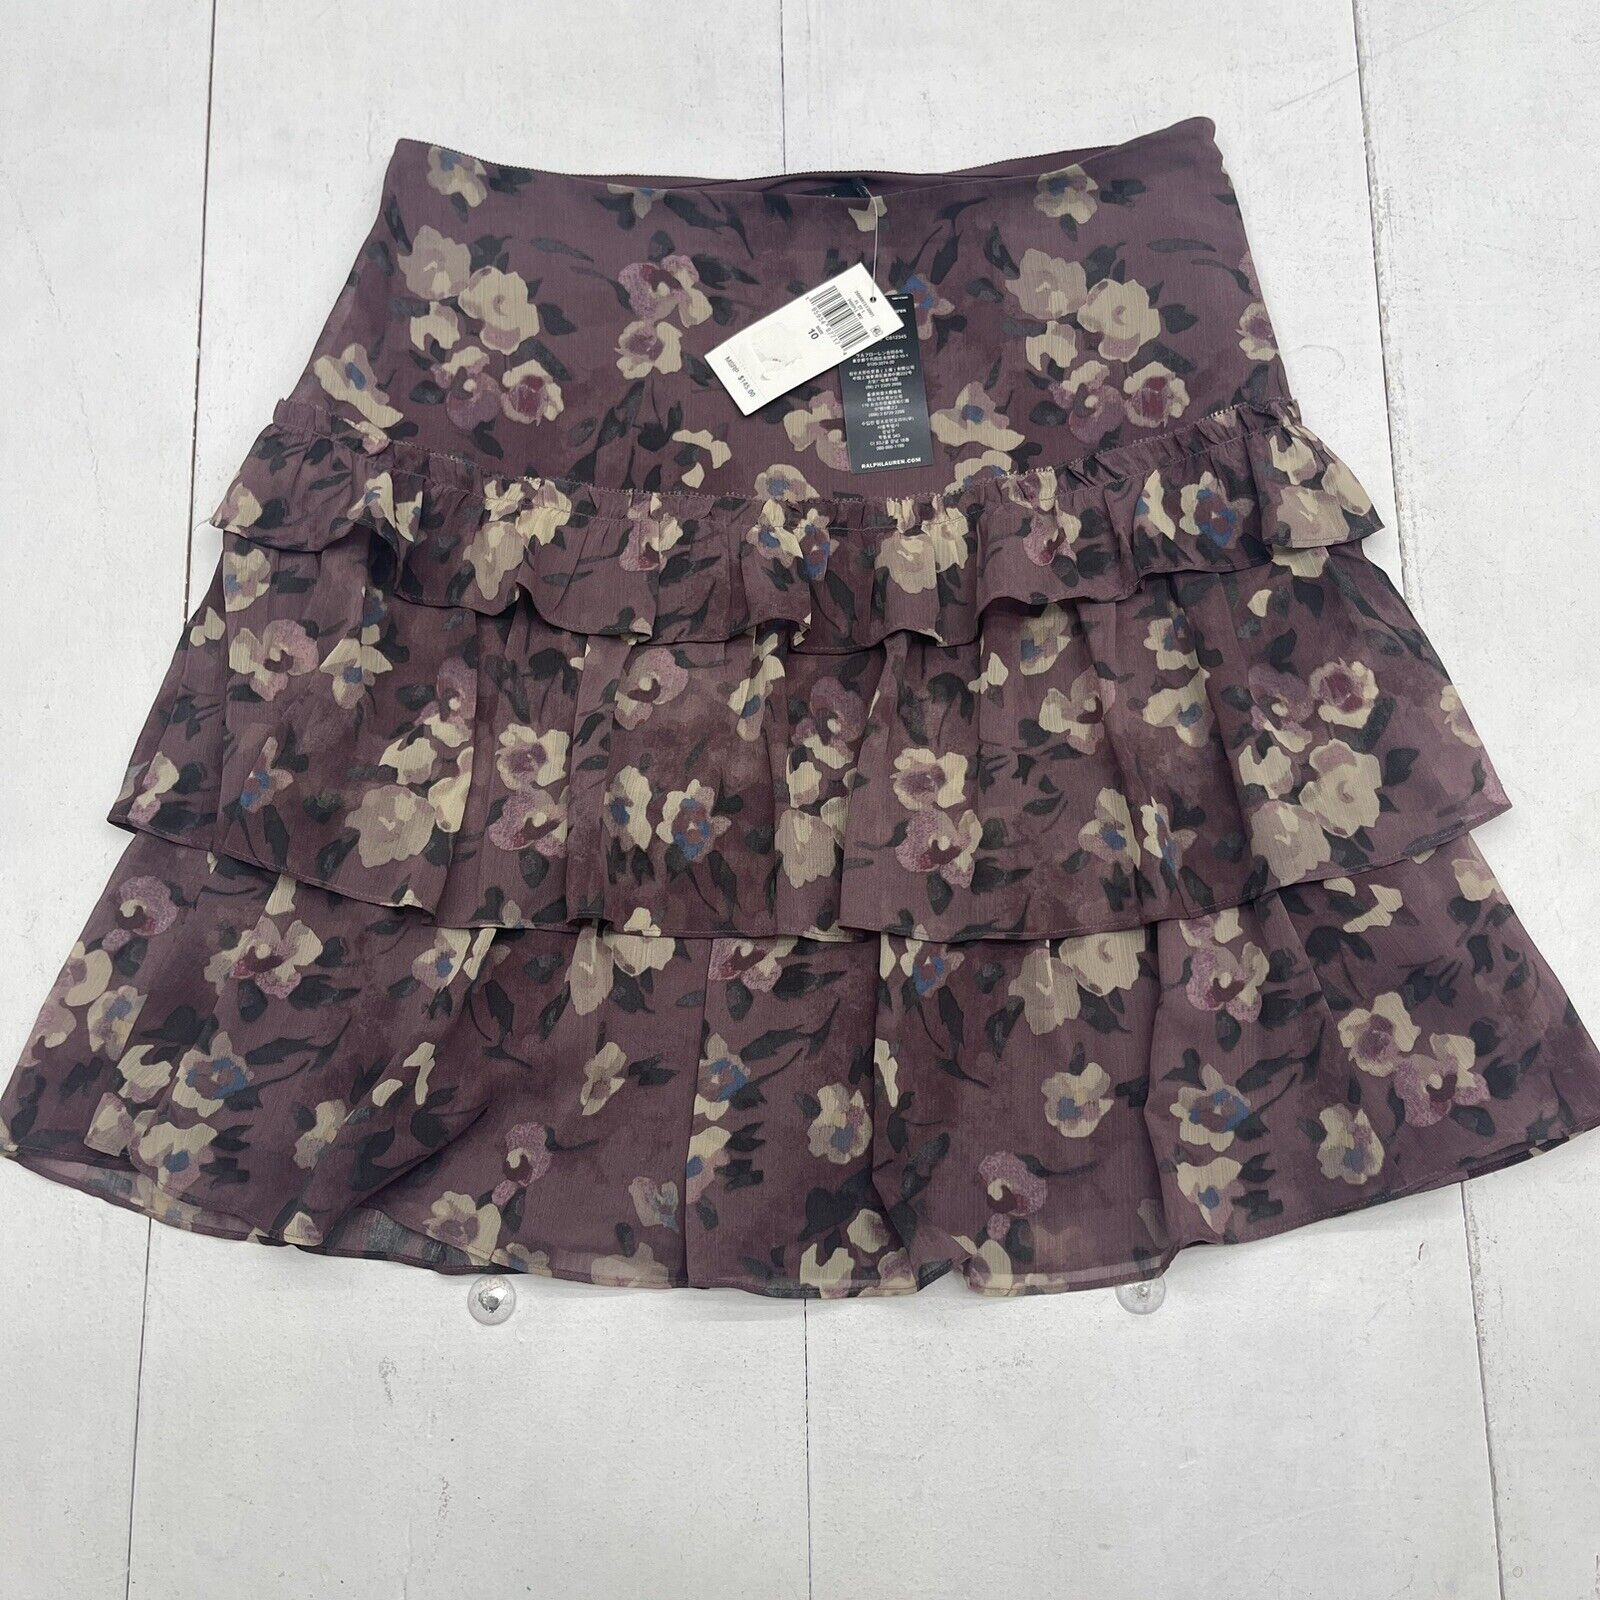 Lauren Ralph Lauren Georgette Crinkle Purple Mini Skirt Women’s 10 New